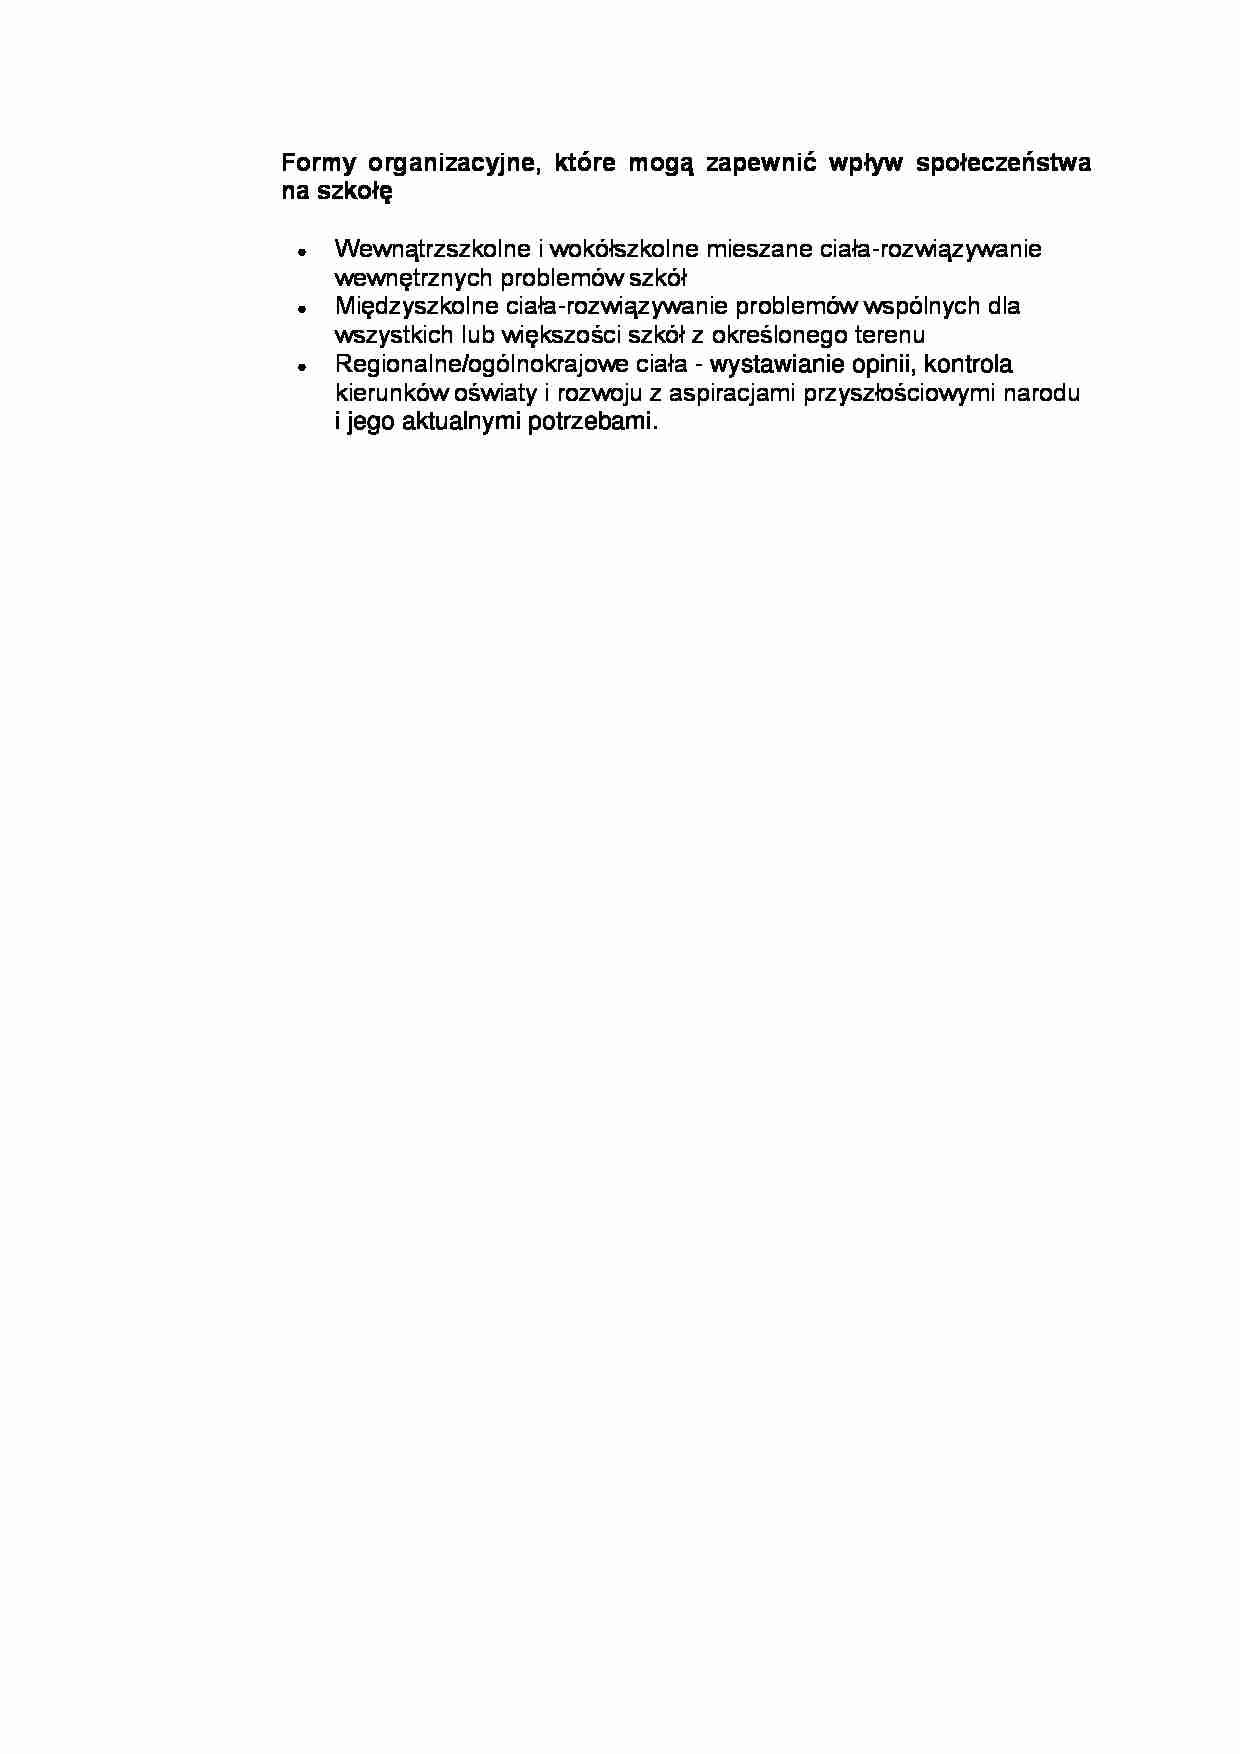  Formy organizacyjne - omówienie  - strona 1